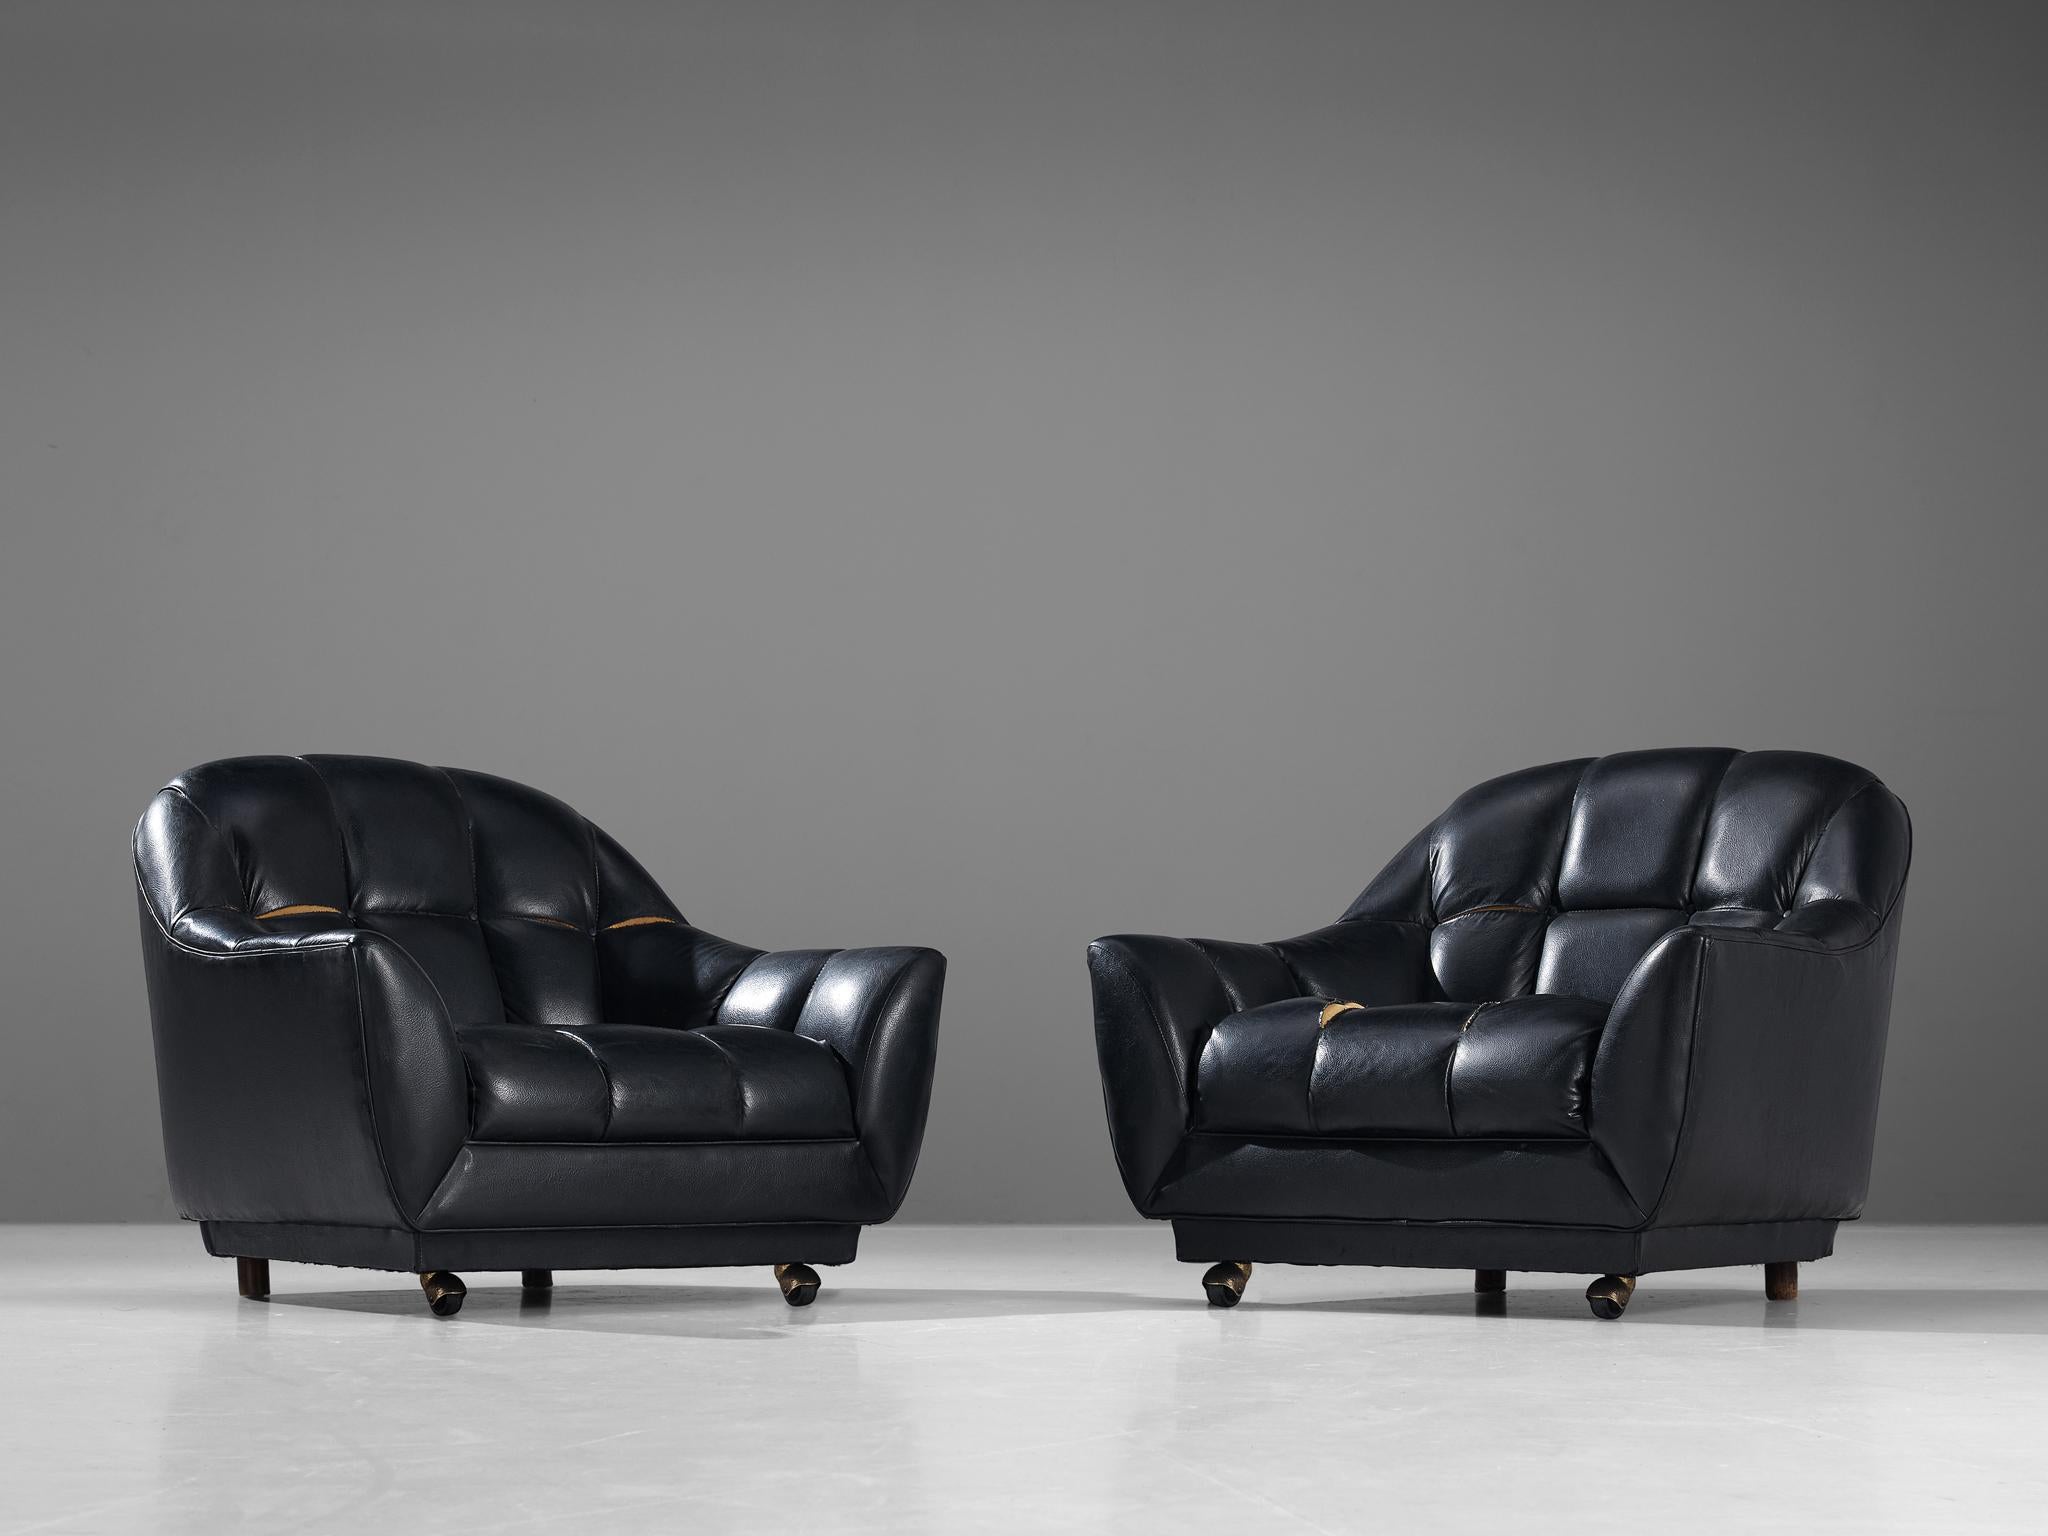 Coppia di sedie da salotto in pelle, Italia, anni '60.

Eccentrica coppia di sedie da salotto in pelle nera. Le cuciture dei sedili in pelle creano un simpatico motivo a scacchiera. Una seduta confortevole è garantita dall'esterno ingombrante ma